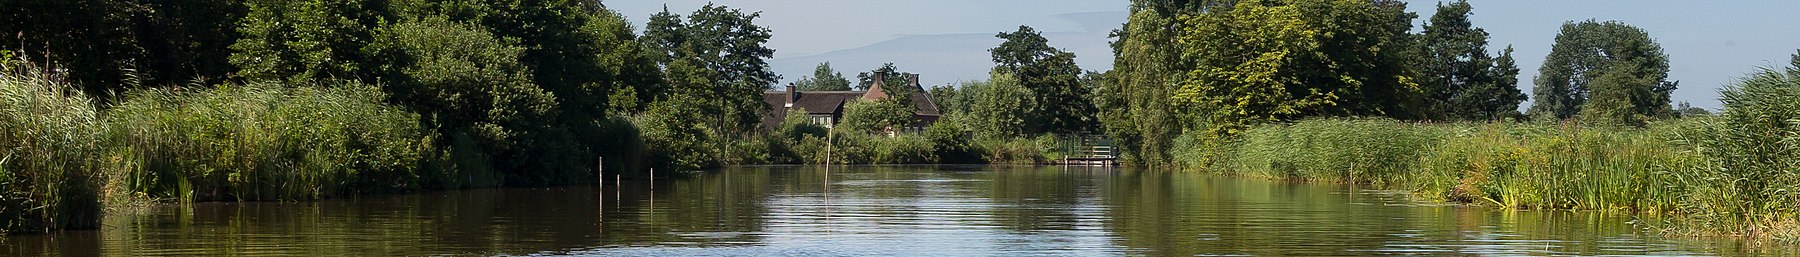 Woerdense Verlaat, река Meije близо до снимката Bosweg12 2017-07-09 11.01 pagebanner.jpg